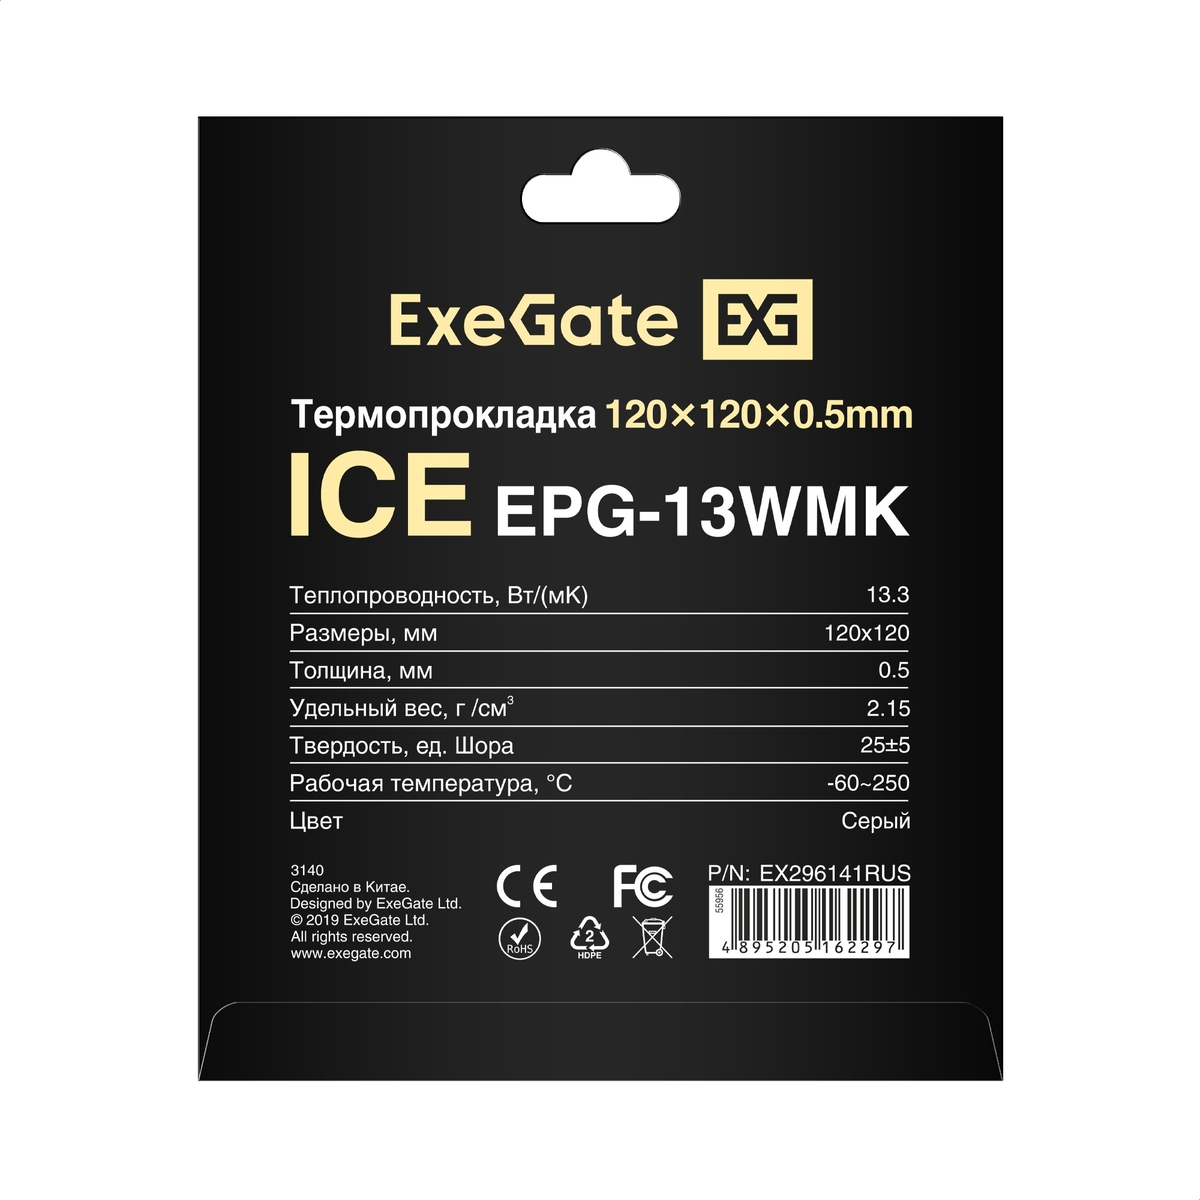 Thermal Pad ExeGate Ice EPG-13WMK 120x120x0.5